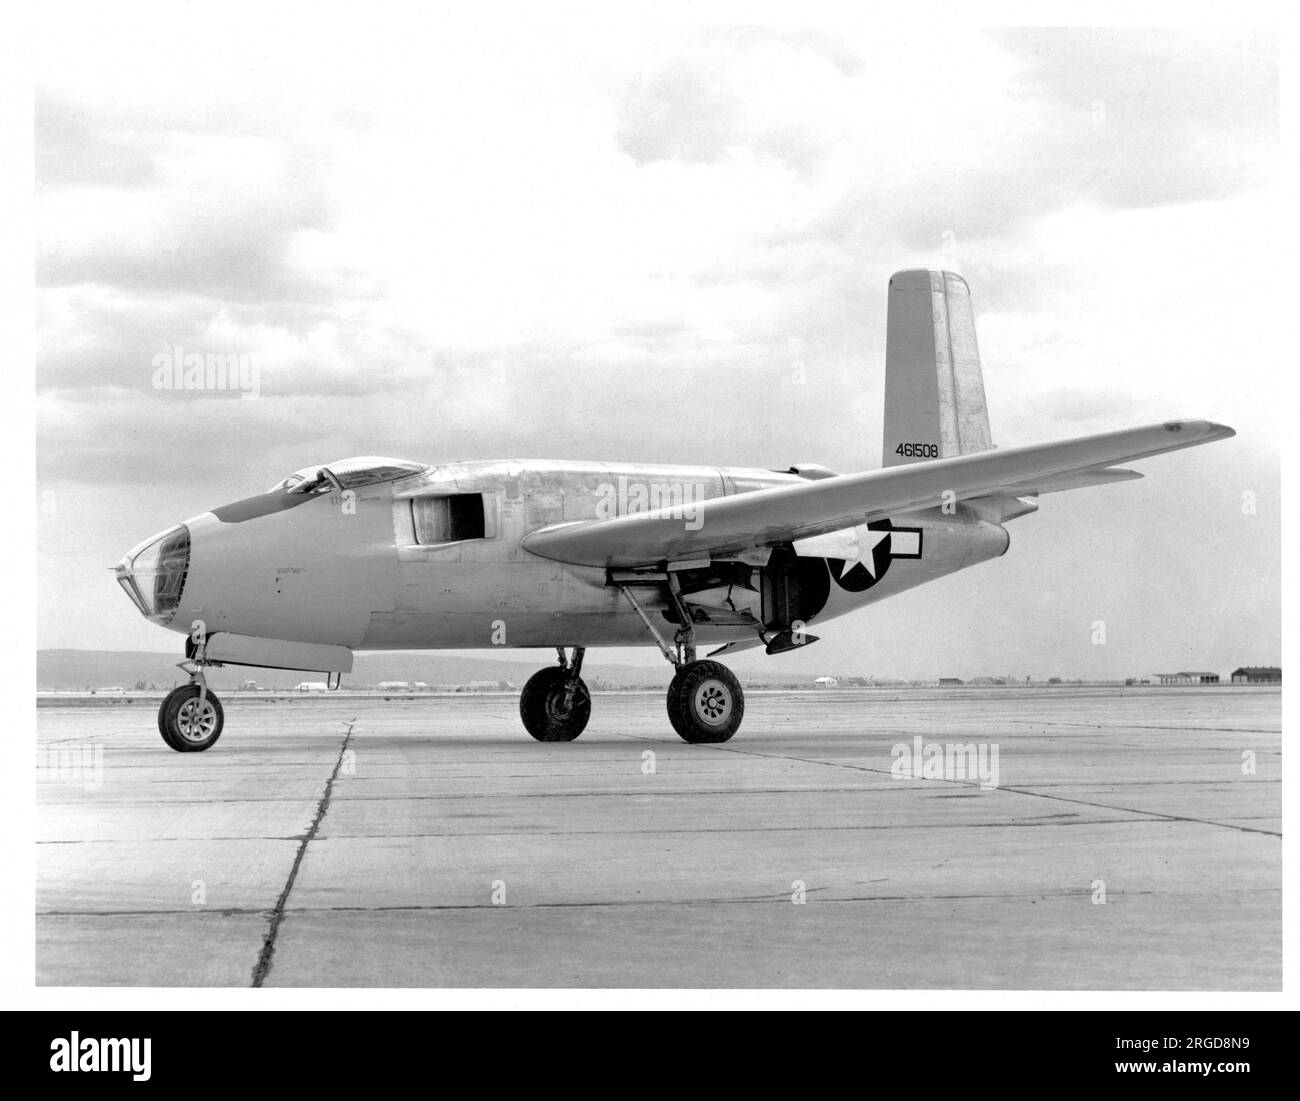 United Sates Air Force - Douglas XB-43 44-61508, premier prototype produit en utilisant la cellule de test statique XB-42 Mixmaster, vue à la base aérienne de l'armée de Muroc (Edwards AFB / Armstrong Flight Research Center). Banque D'Images